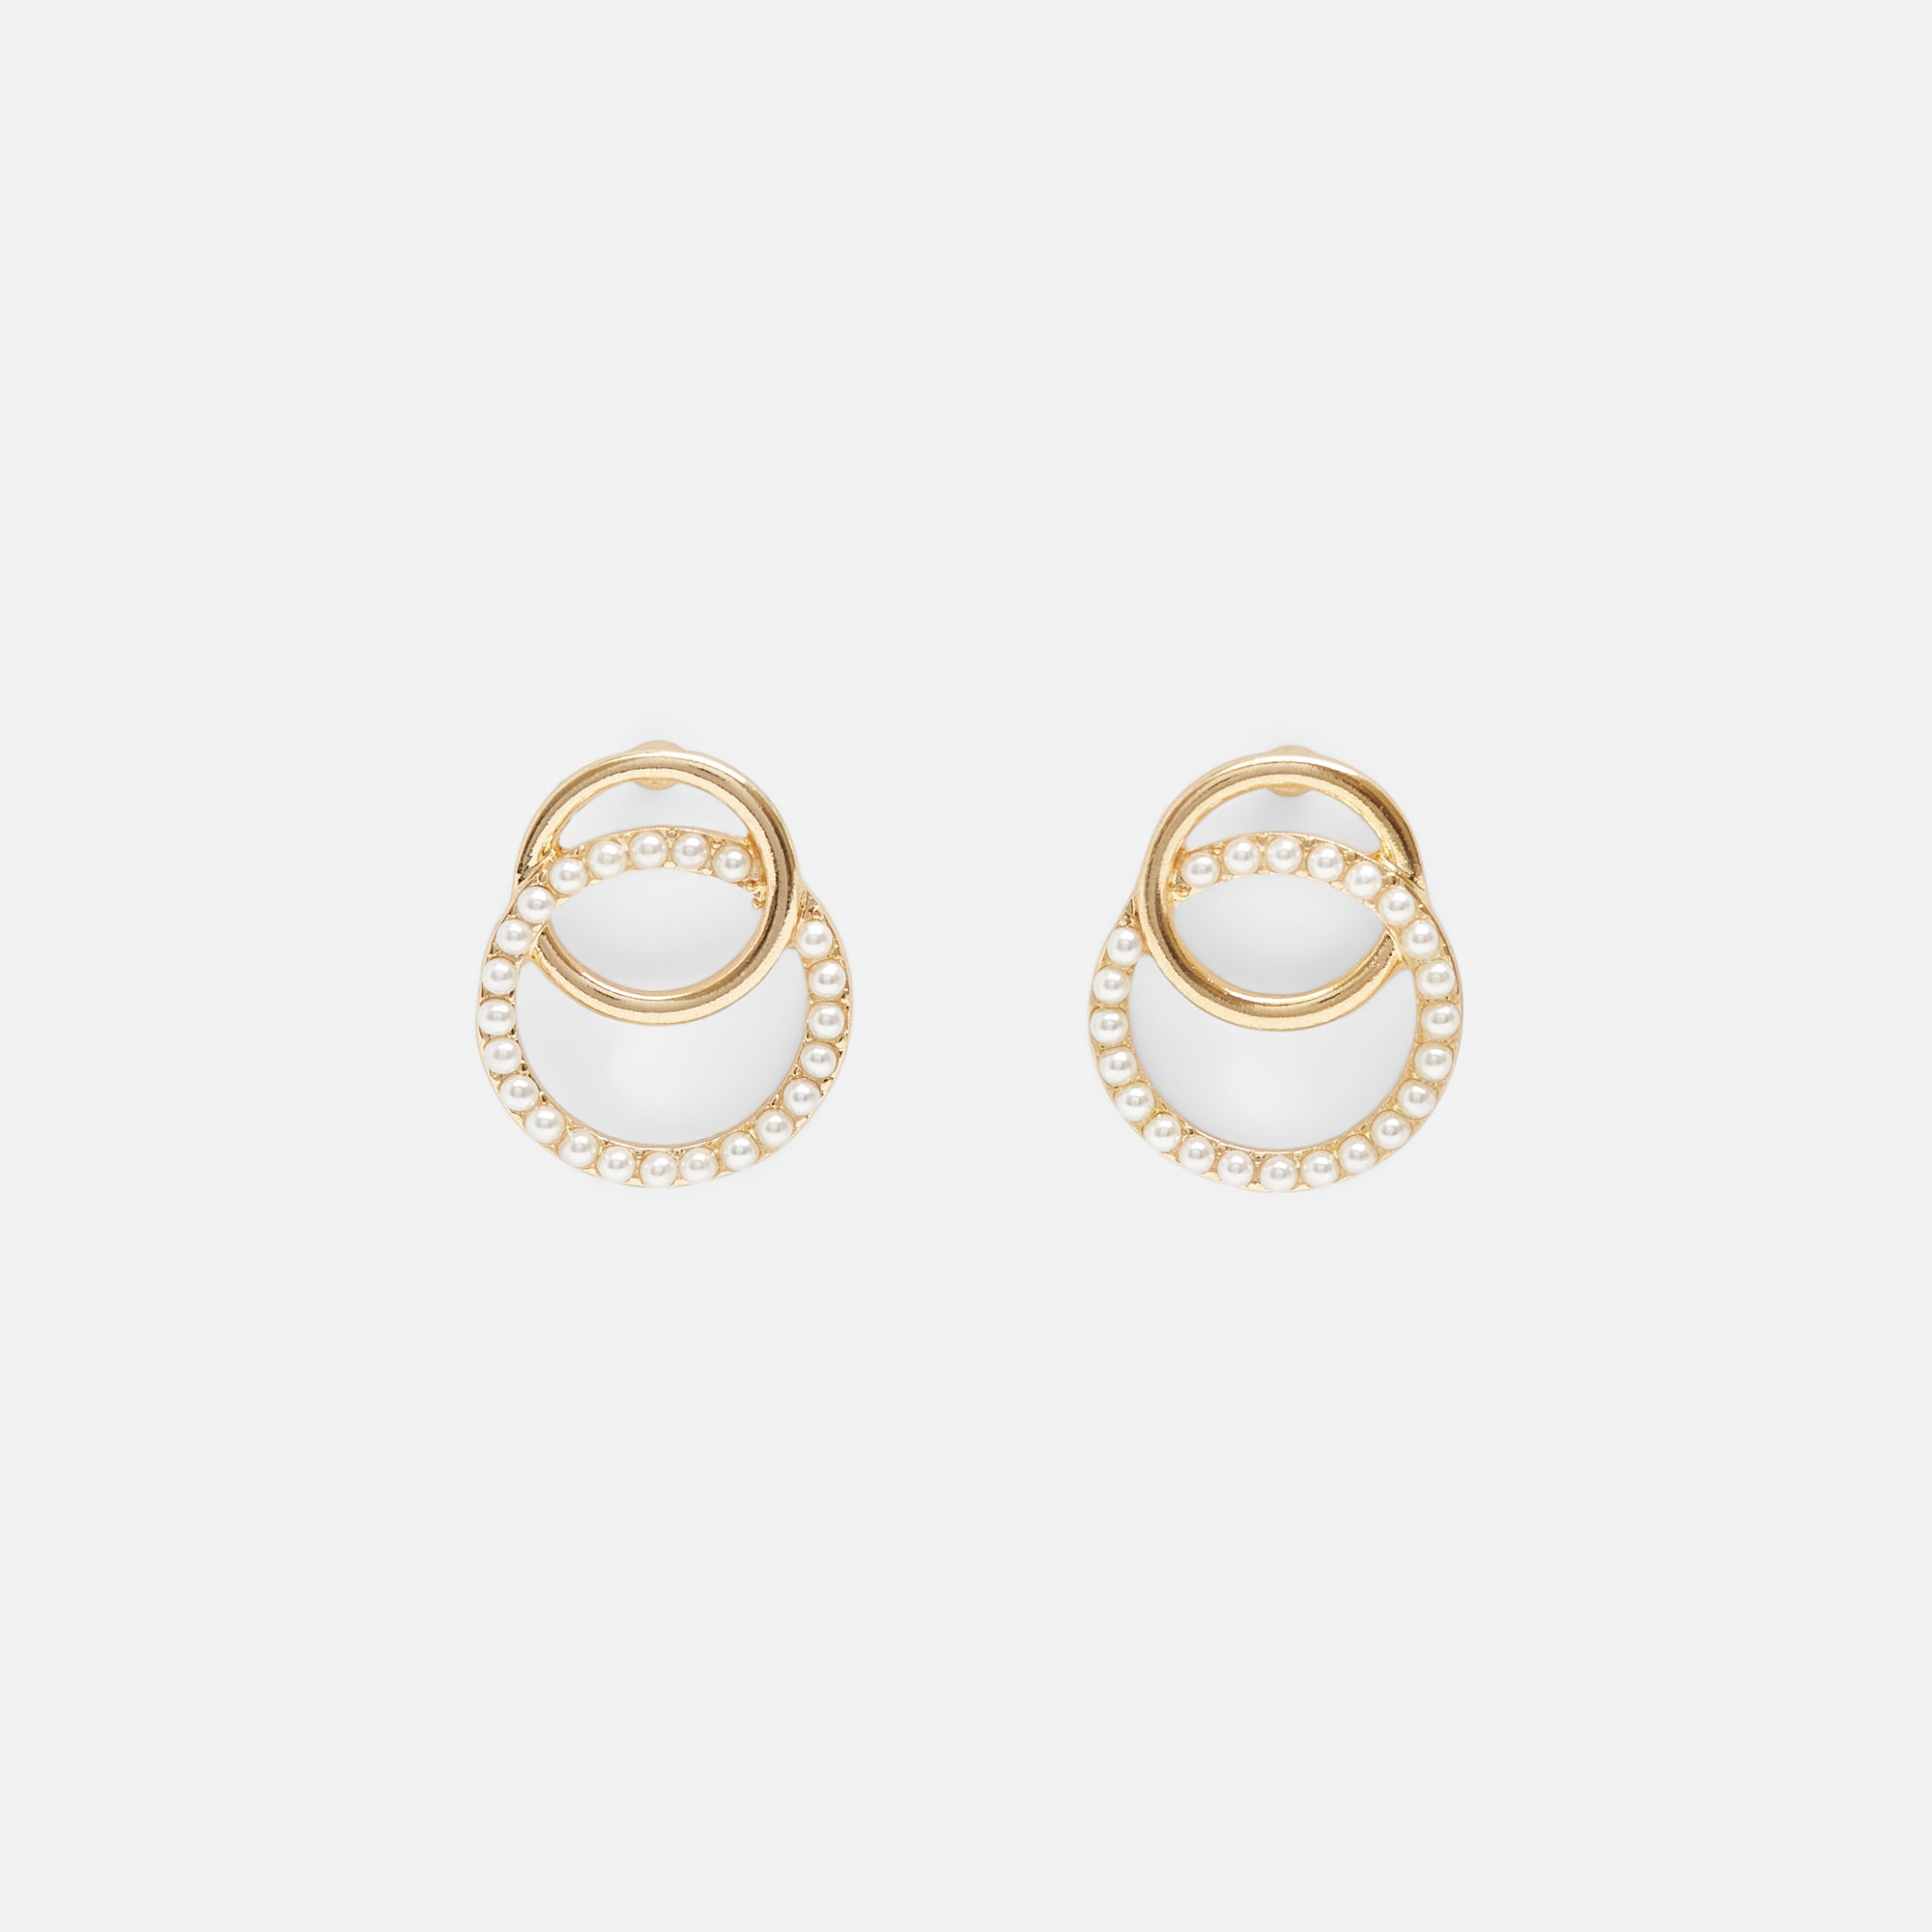 Boucles d’oreilles dorées double cercles avec perles